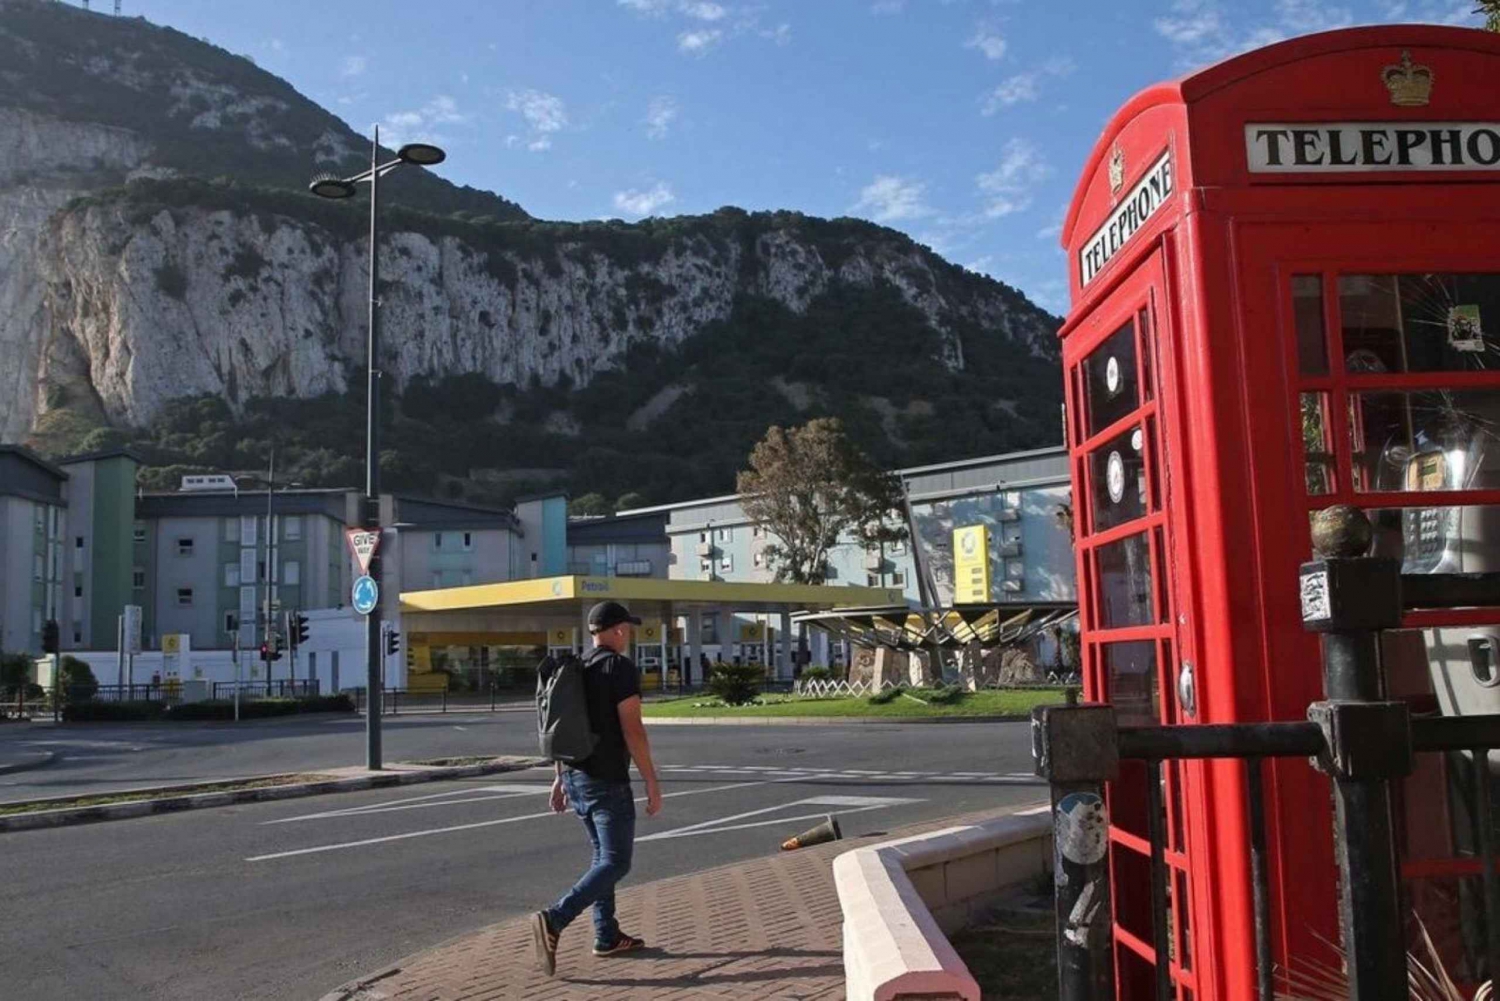 Desde Málaga/Torremolinos/Benalmádena: Excursión de un día a Gibraltar